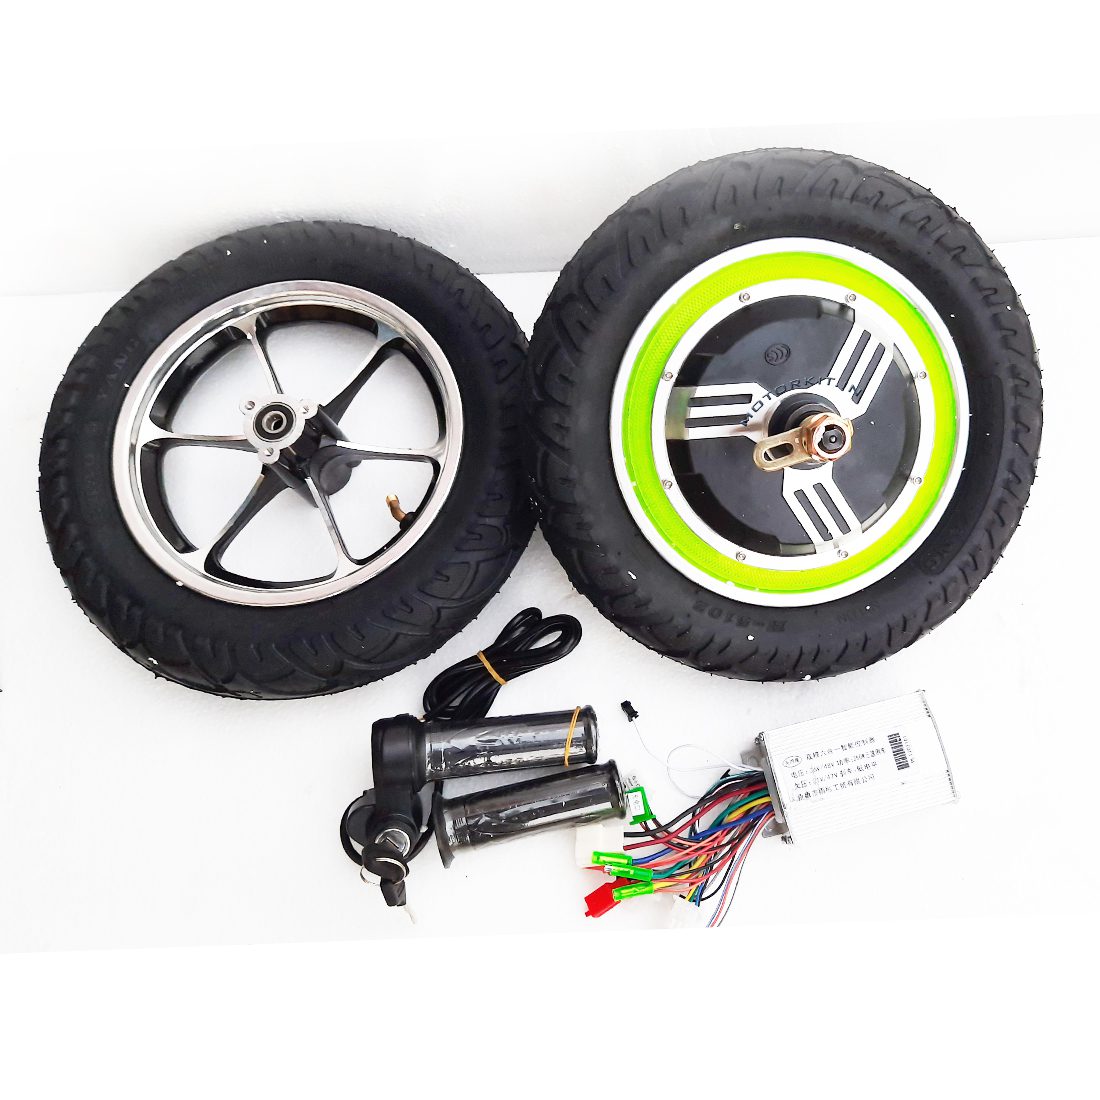 https://evzon.in/product/48v-350watt-bldc-tyre-hub-motor-kit/